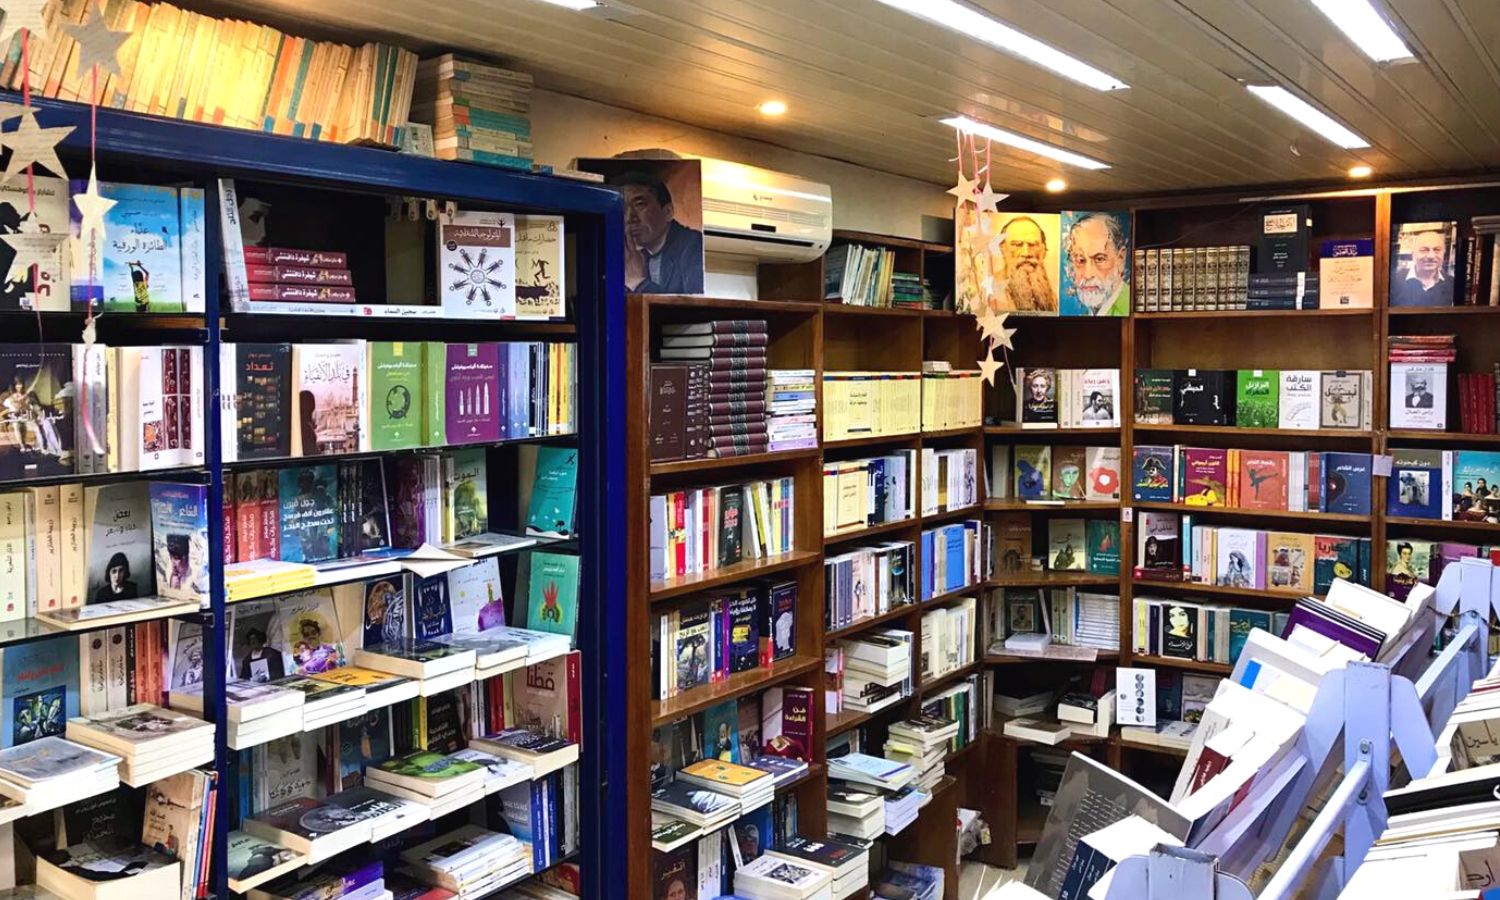 عشرات الكتب داخل مكتبة "كردية" في مدينة اللاذقية (مكتبة "كردية"/ فيس بوك)